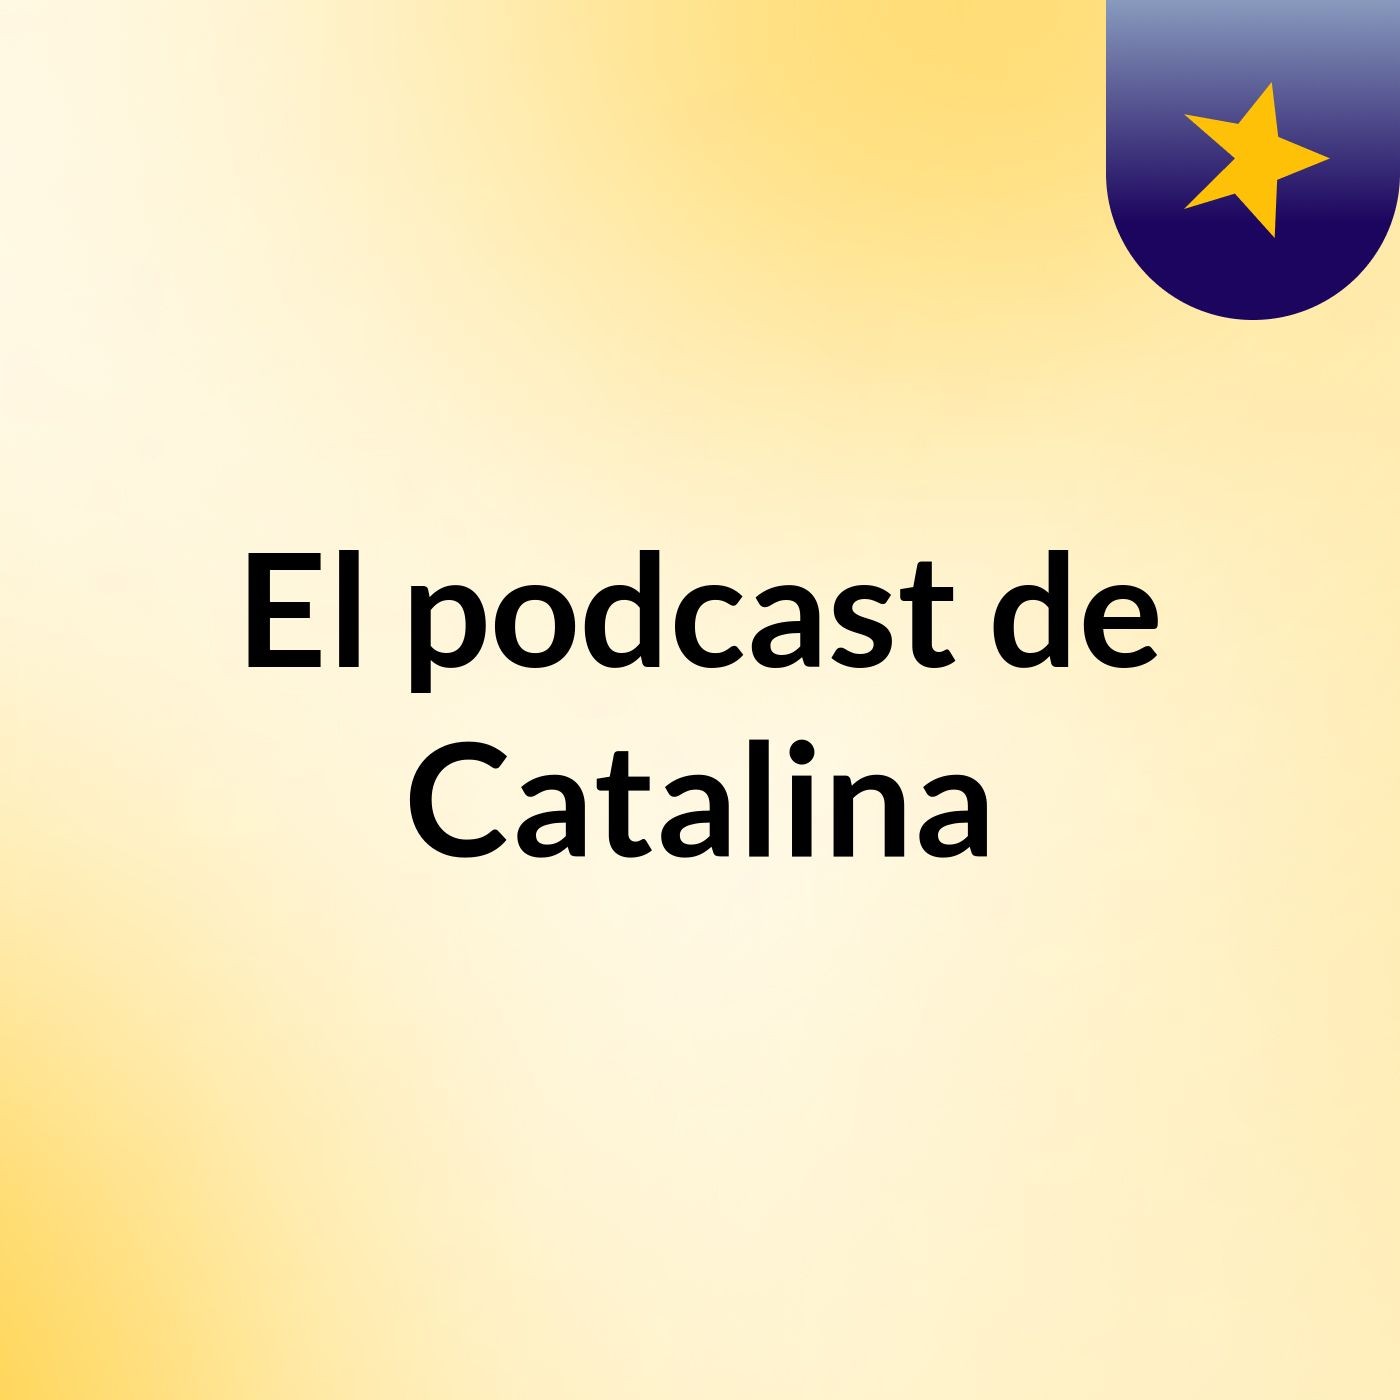 El podcast de Catalina